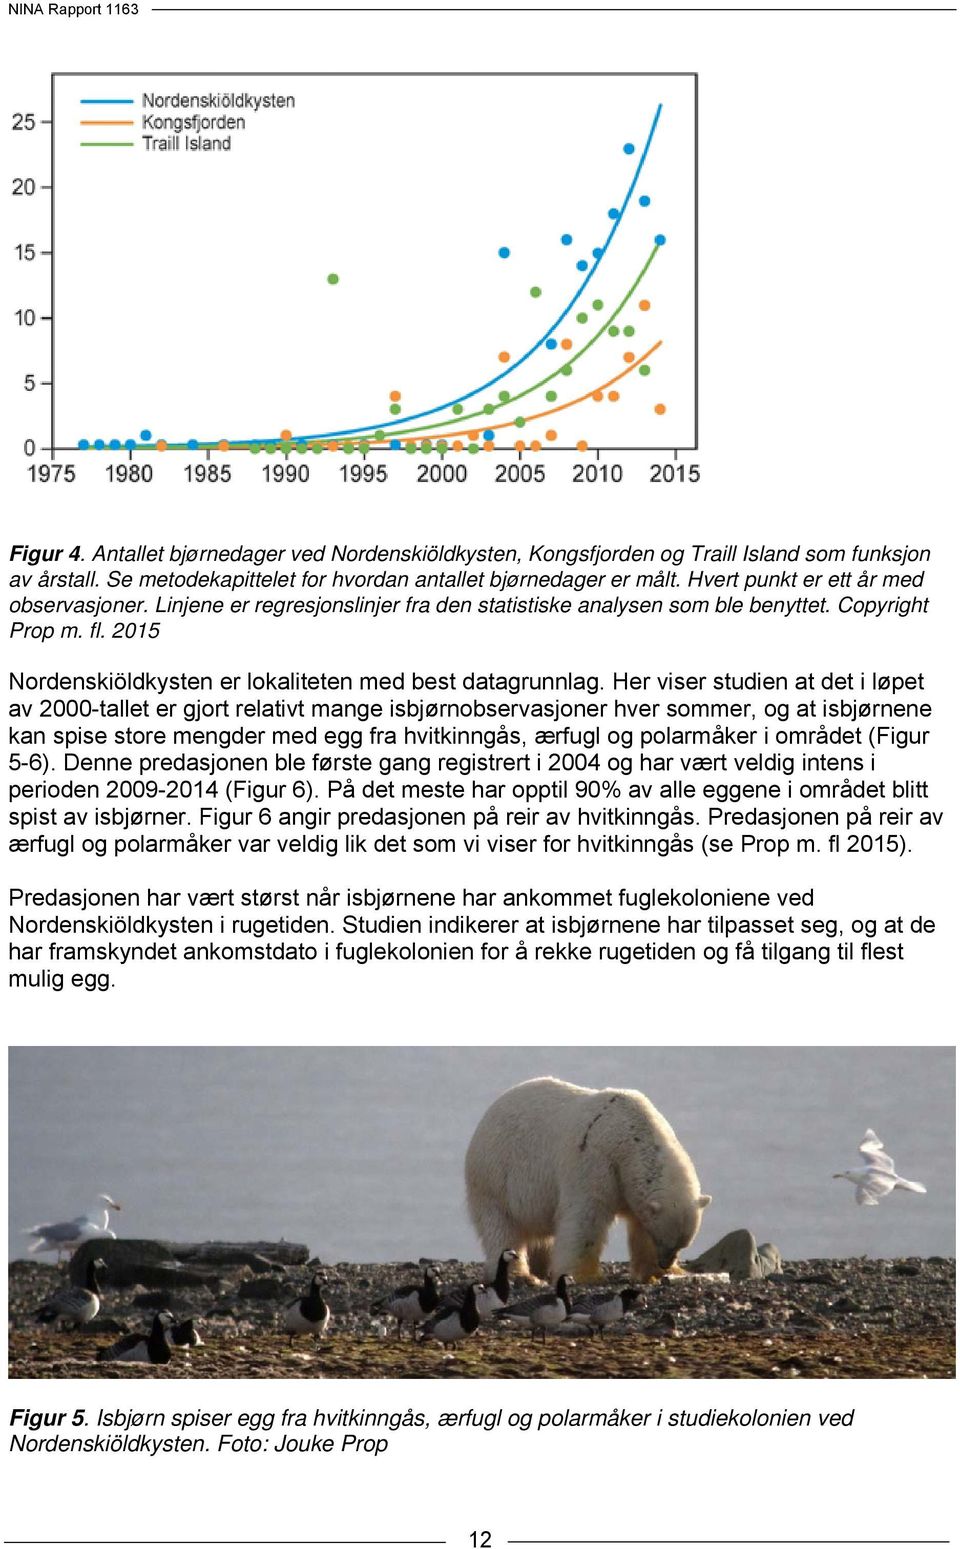 Her viser studien at det i løpet av 2000-tallet er gjort relativt mange isbjørnobservasjoner hver sommer, og at isbjørnene kan spise store mengder med egg fra hvitkinngås, ærfugl og polarmåker i